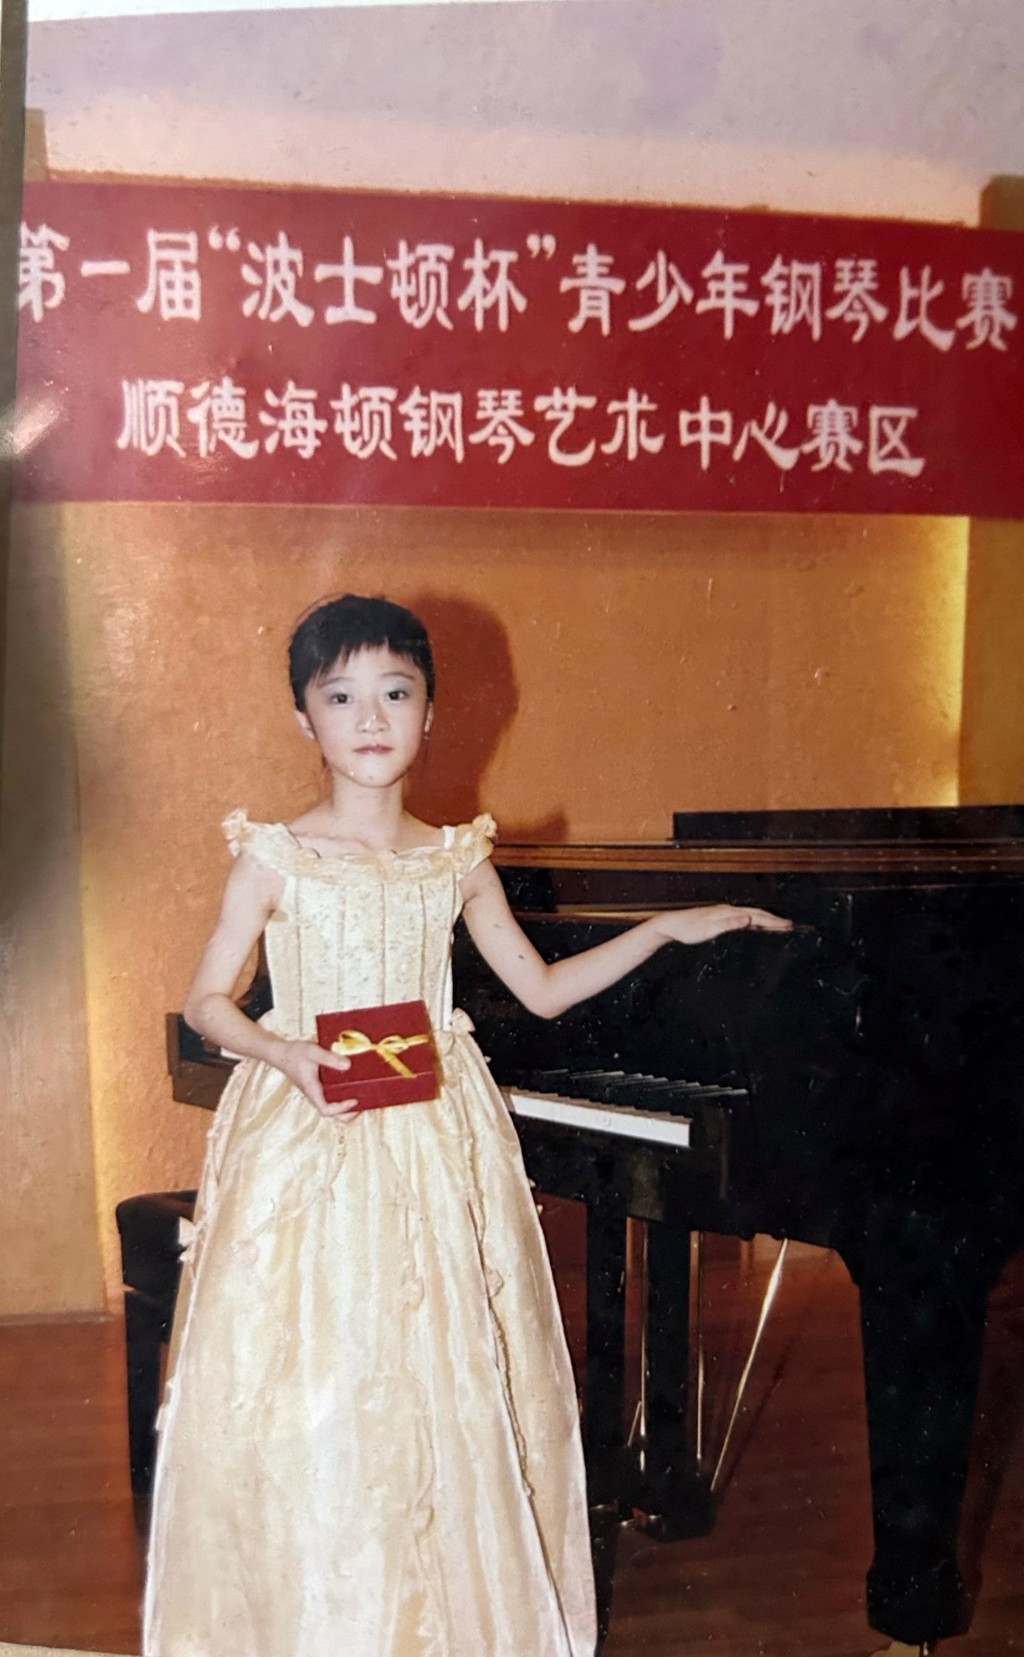 陳曉彤自細已經學鋼琴。